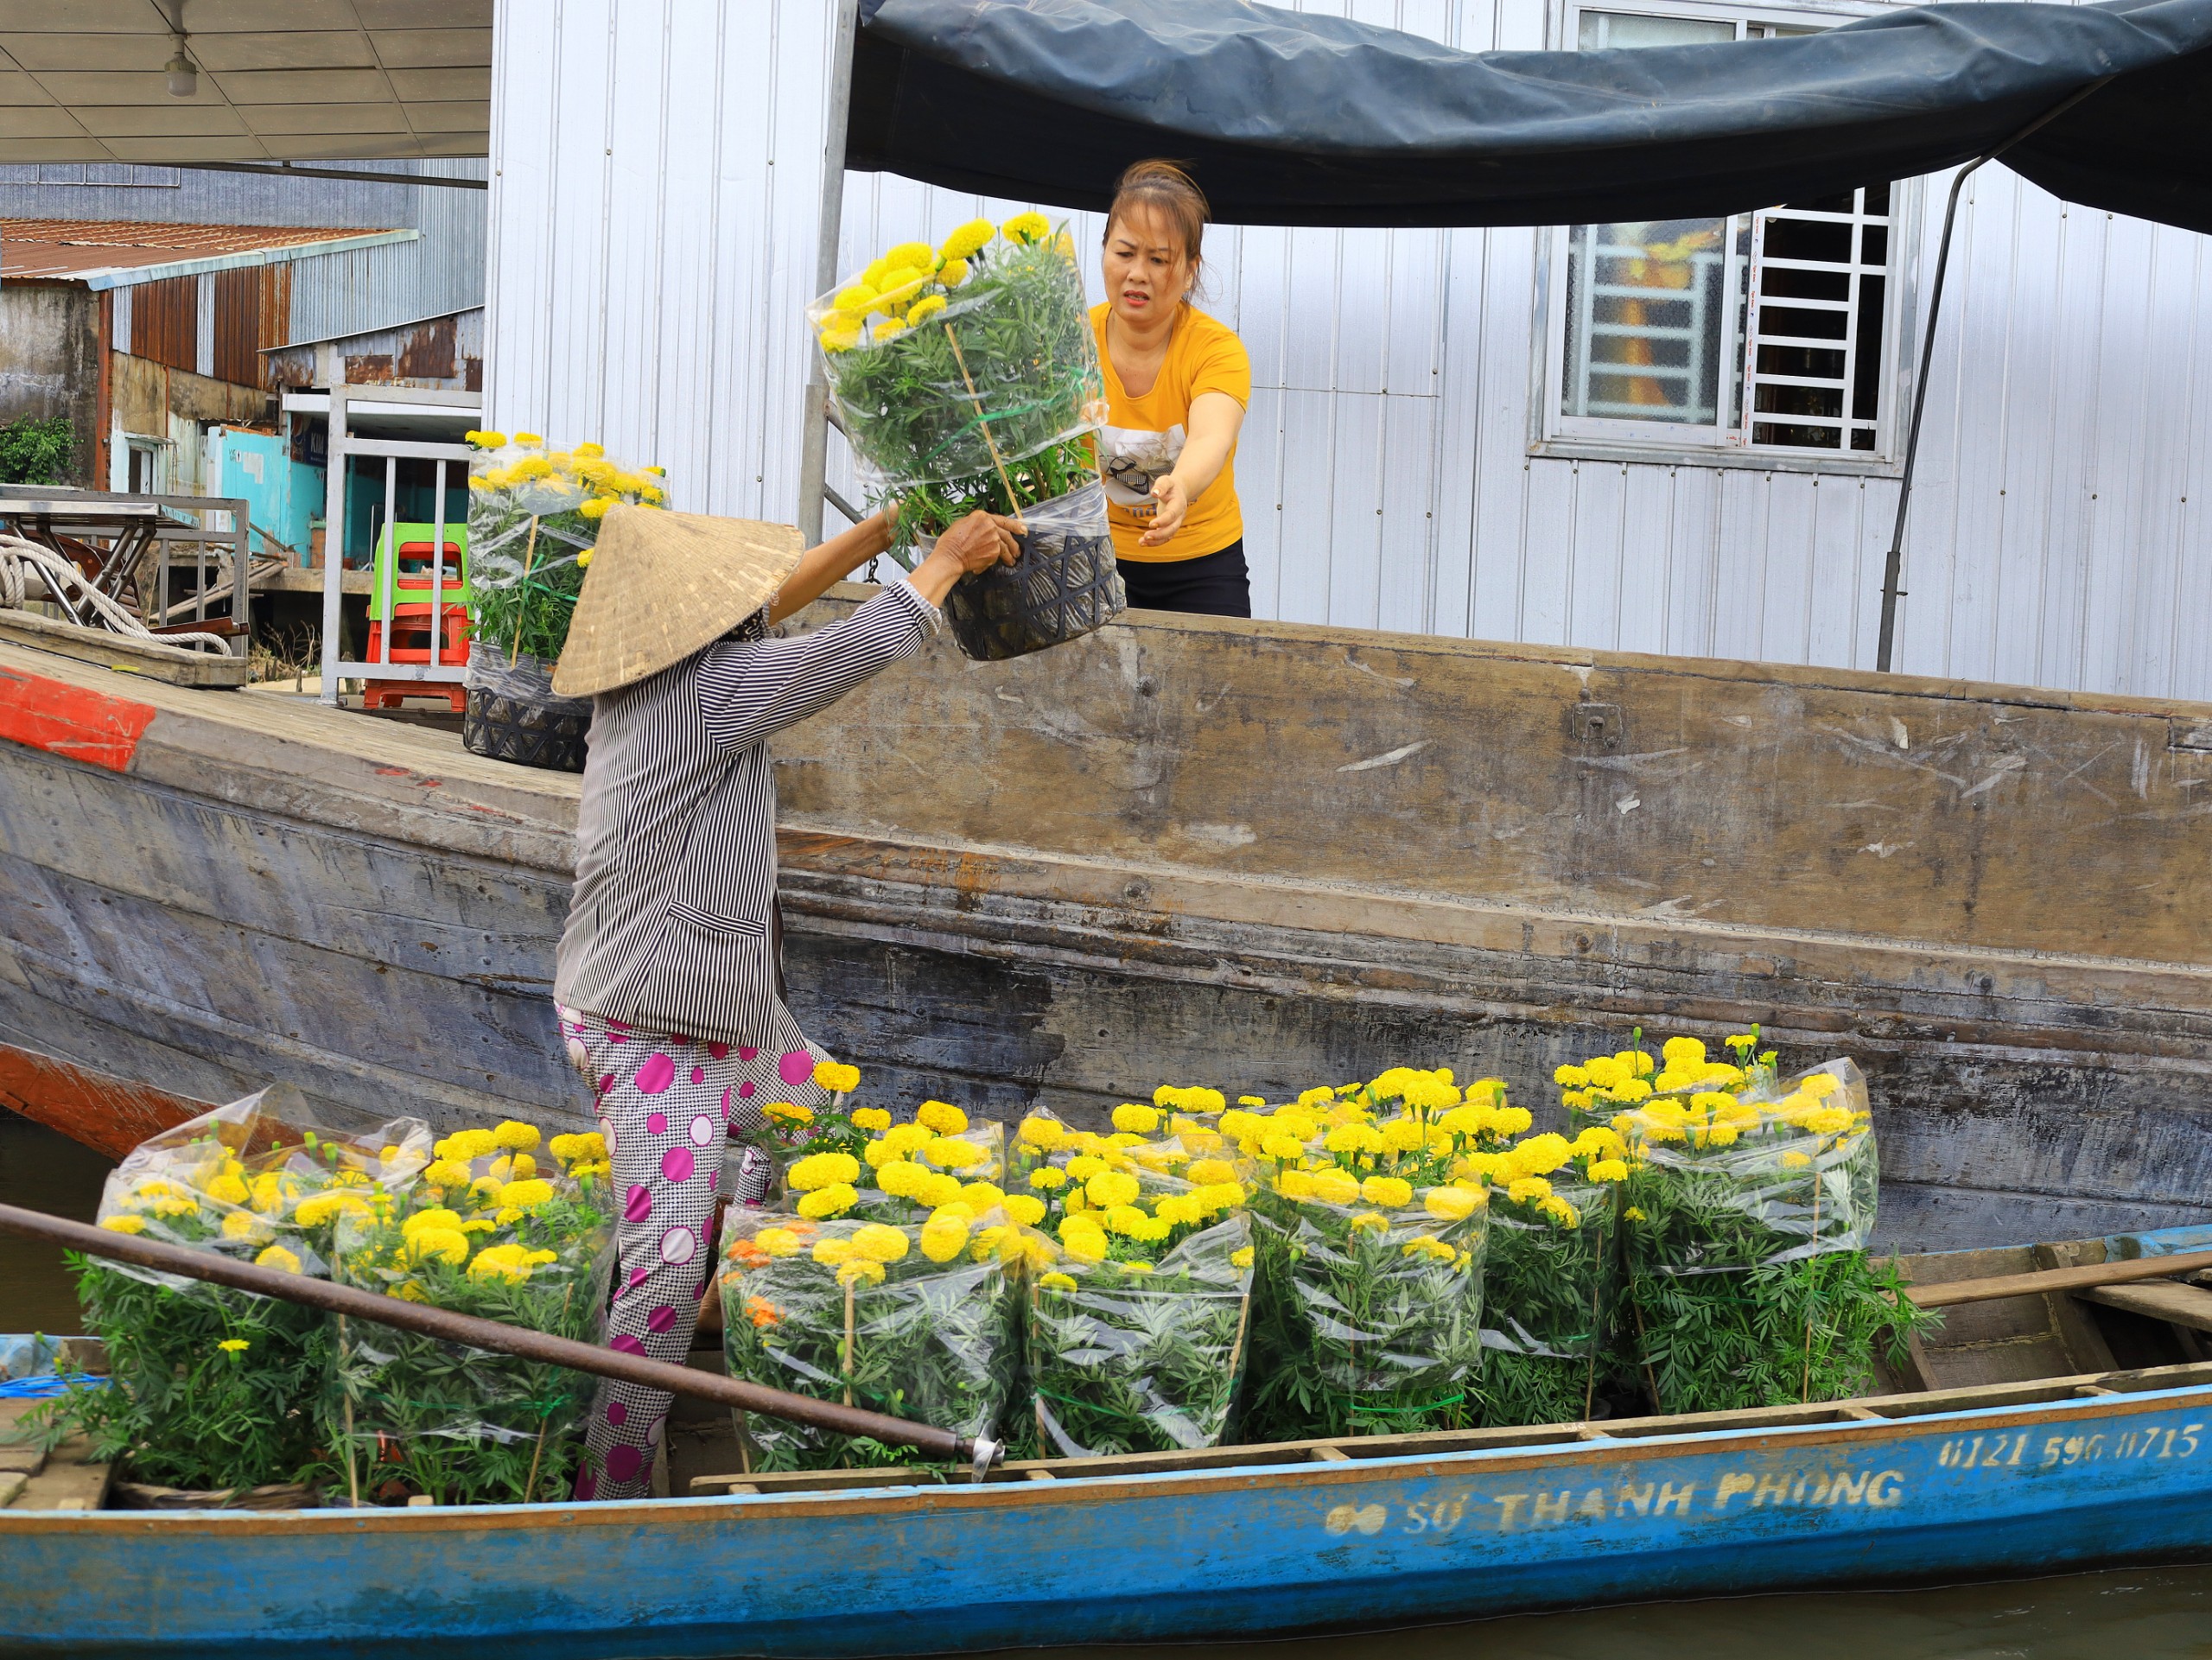 Dân thương hồ mua hoa vạn thọ tại chợ nổi với giá 40.000 đồng mỗi chậu, chưng lên ghe để đón Tết.